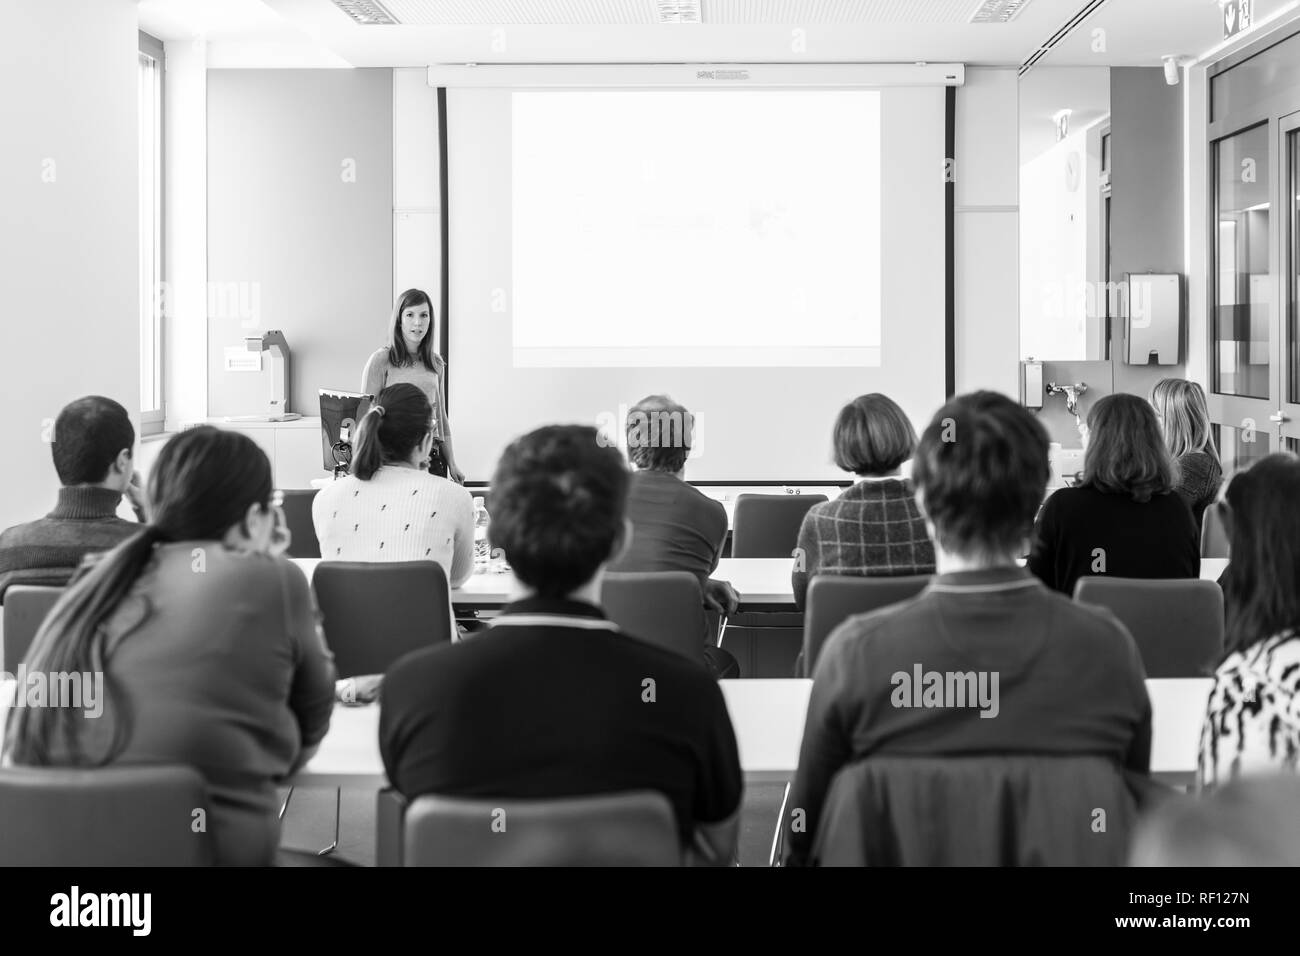 Woman giving presentation in lecture hall à l'université. Banque D'Images